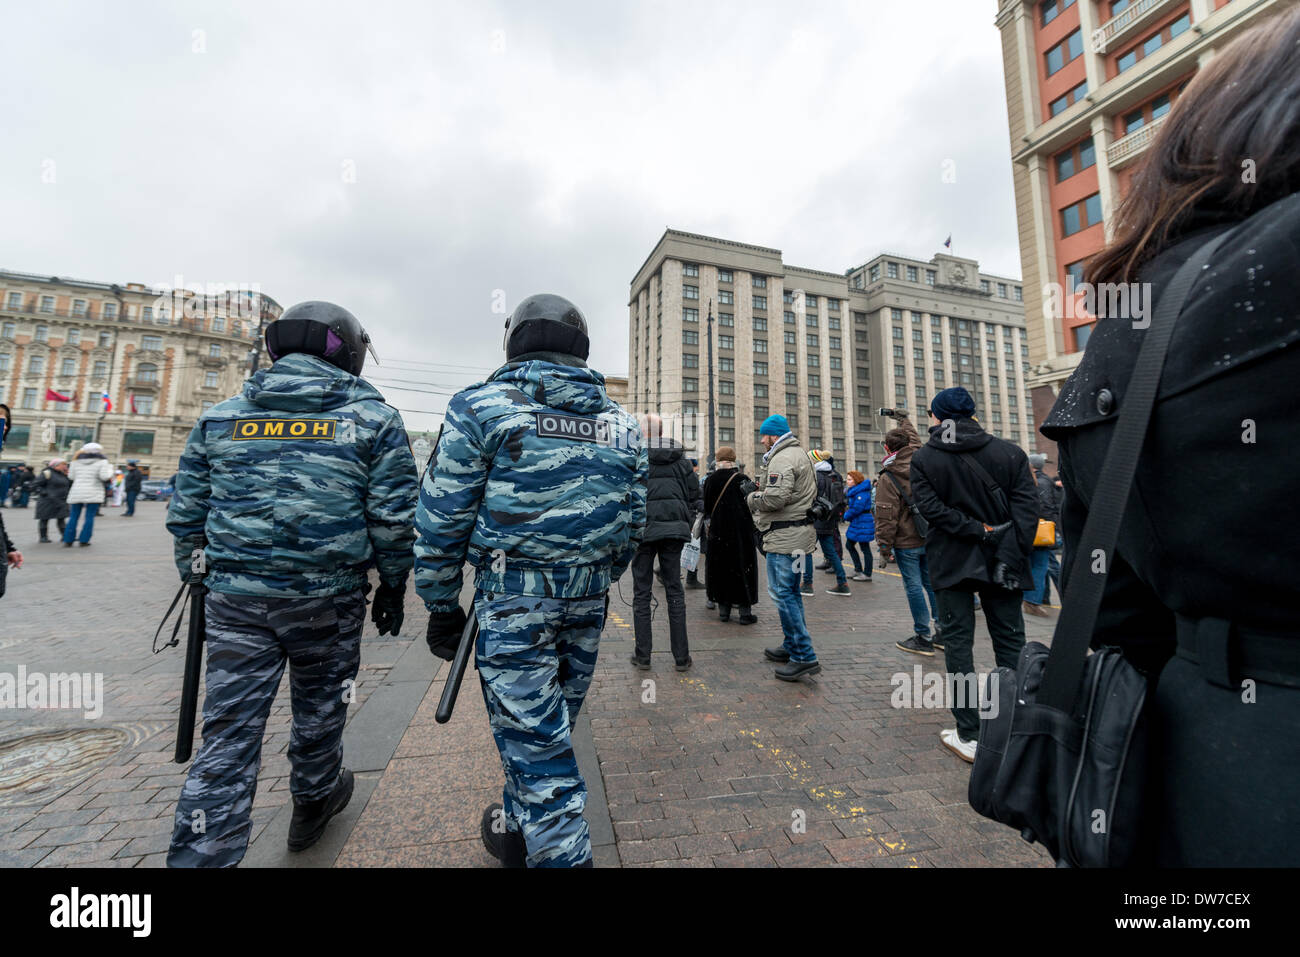 Polizia in segno di protesta contro le truppe russe in Ucraina a Mosca, Manezhnaya Square il 2 marzo, 2014 Foto Stock